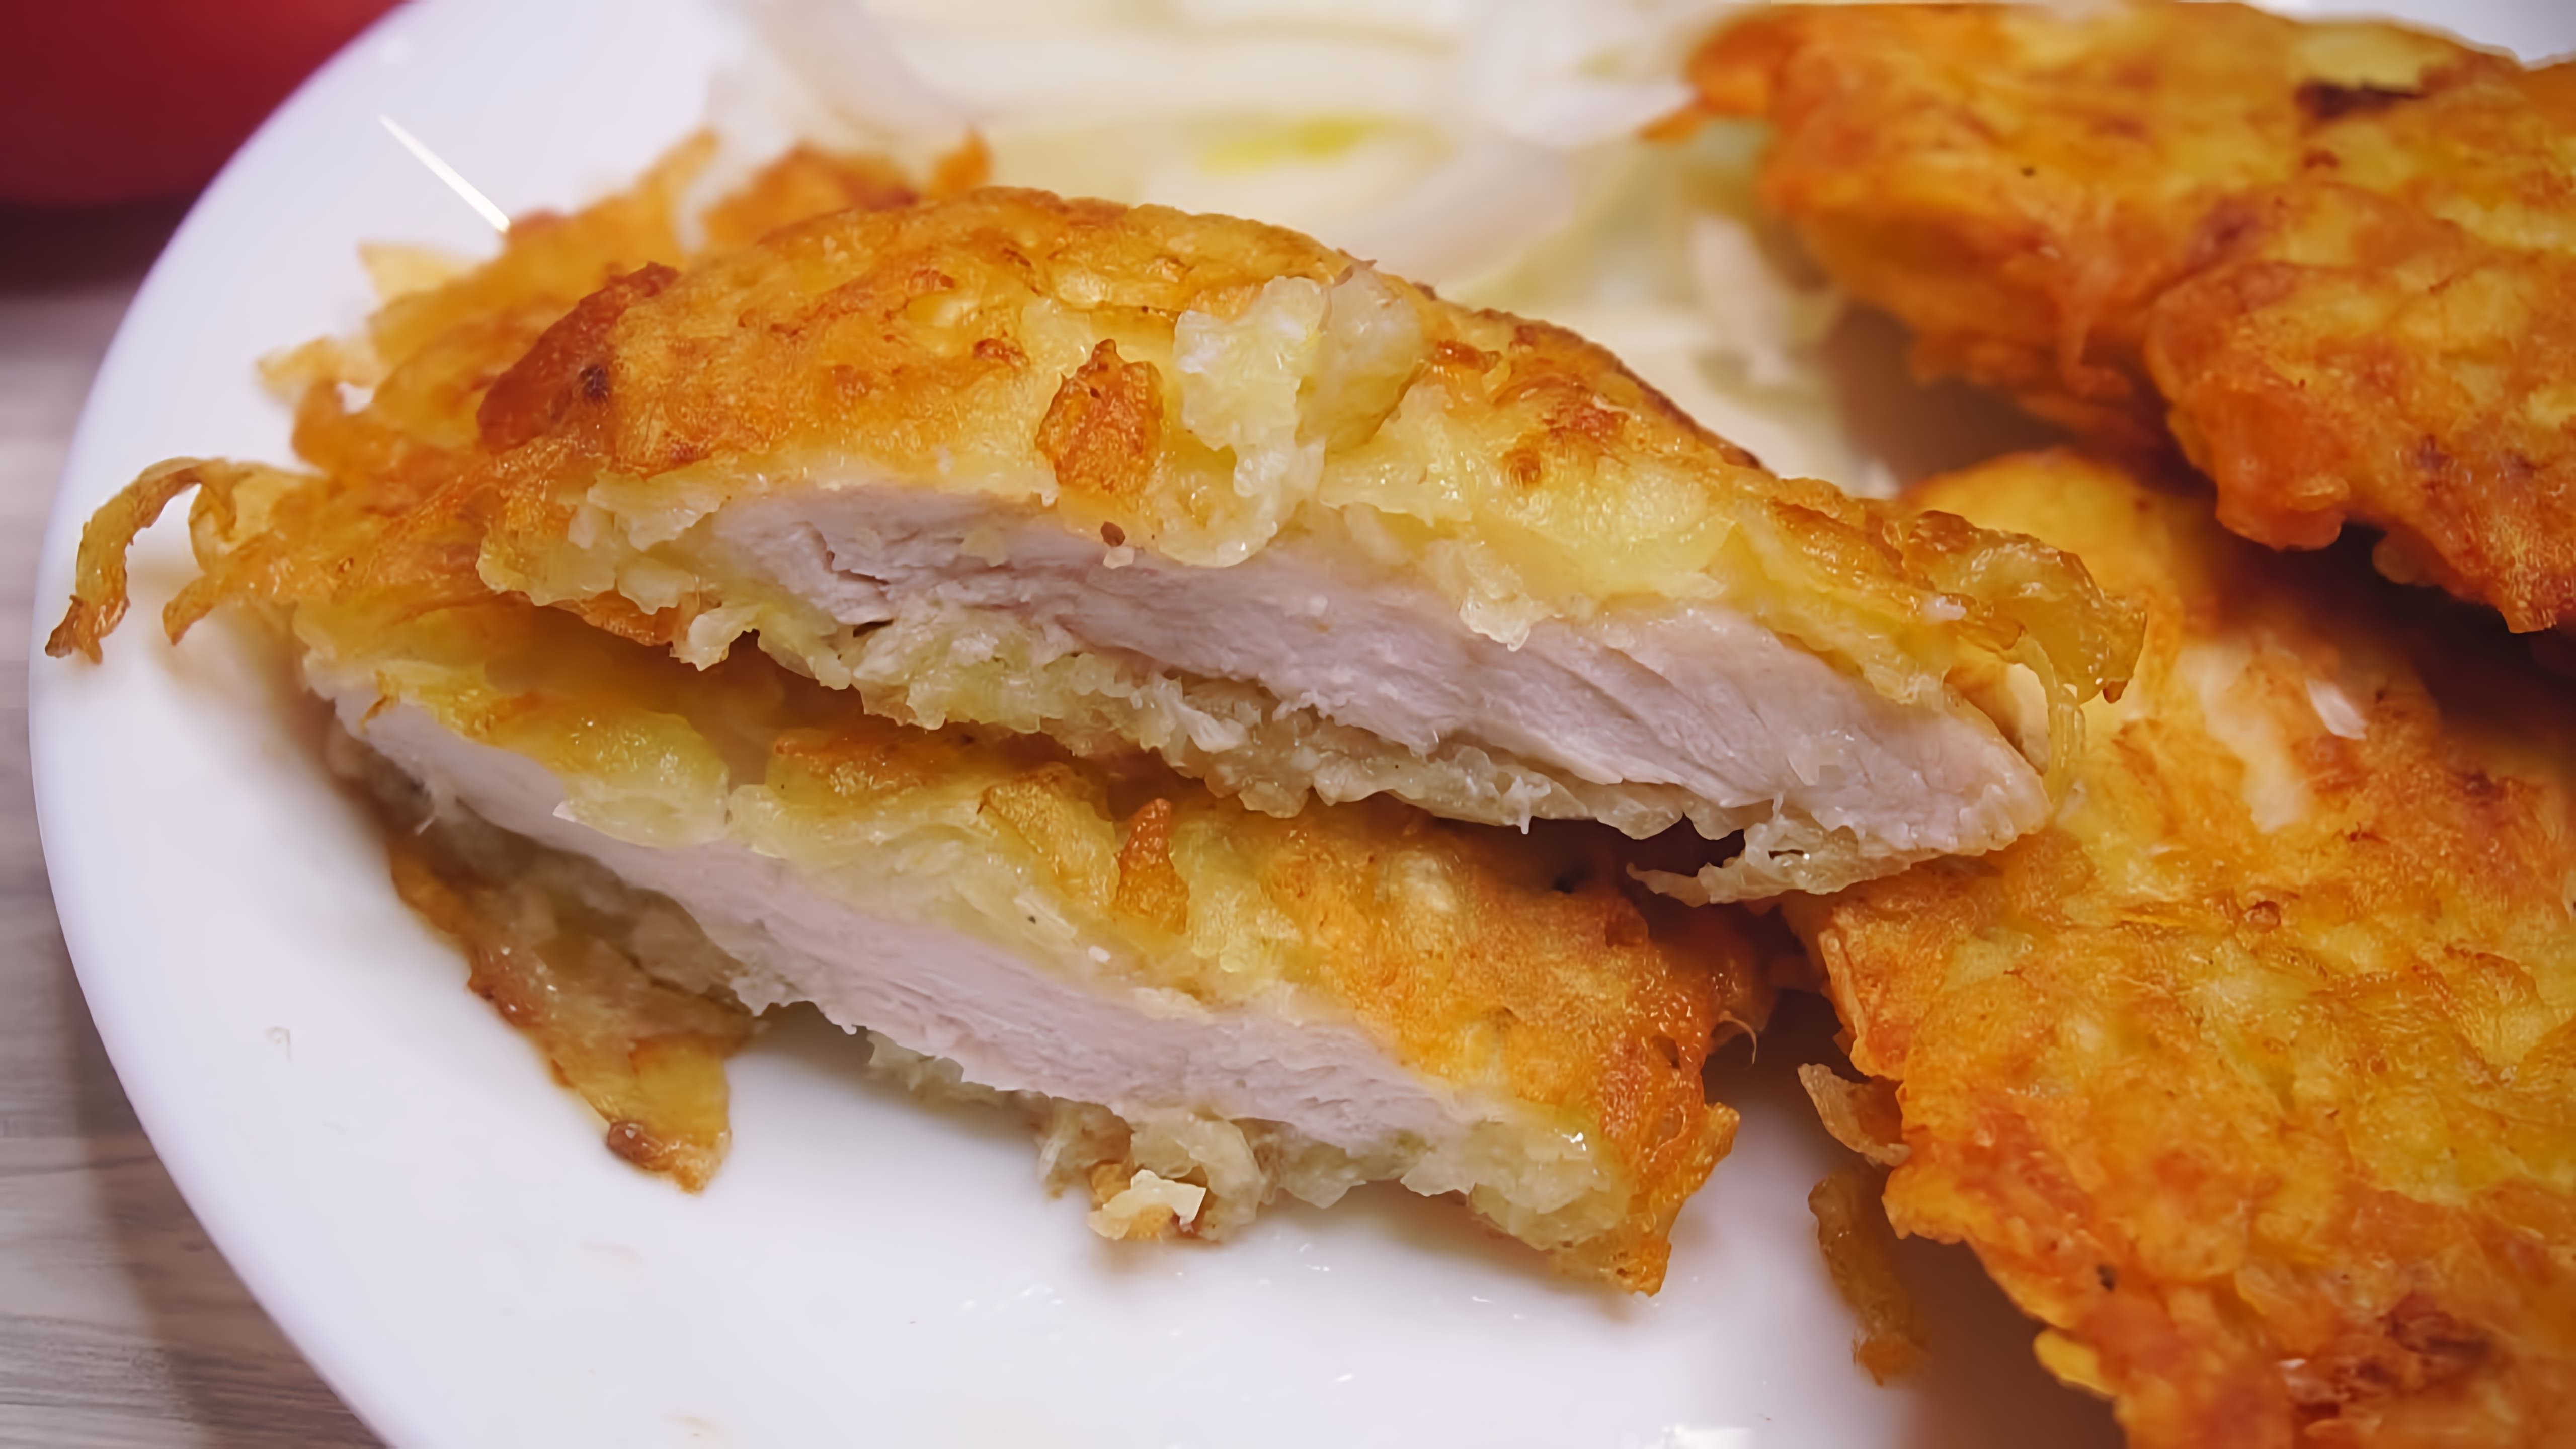 В этом видео демонстрируется рецепт приготовления куриной грудки в картофельной солонке